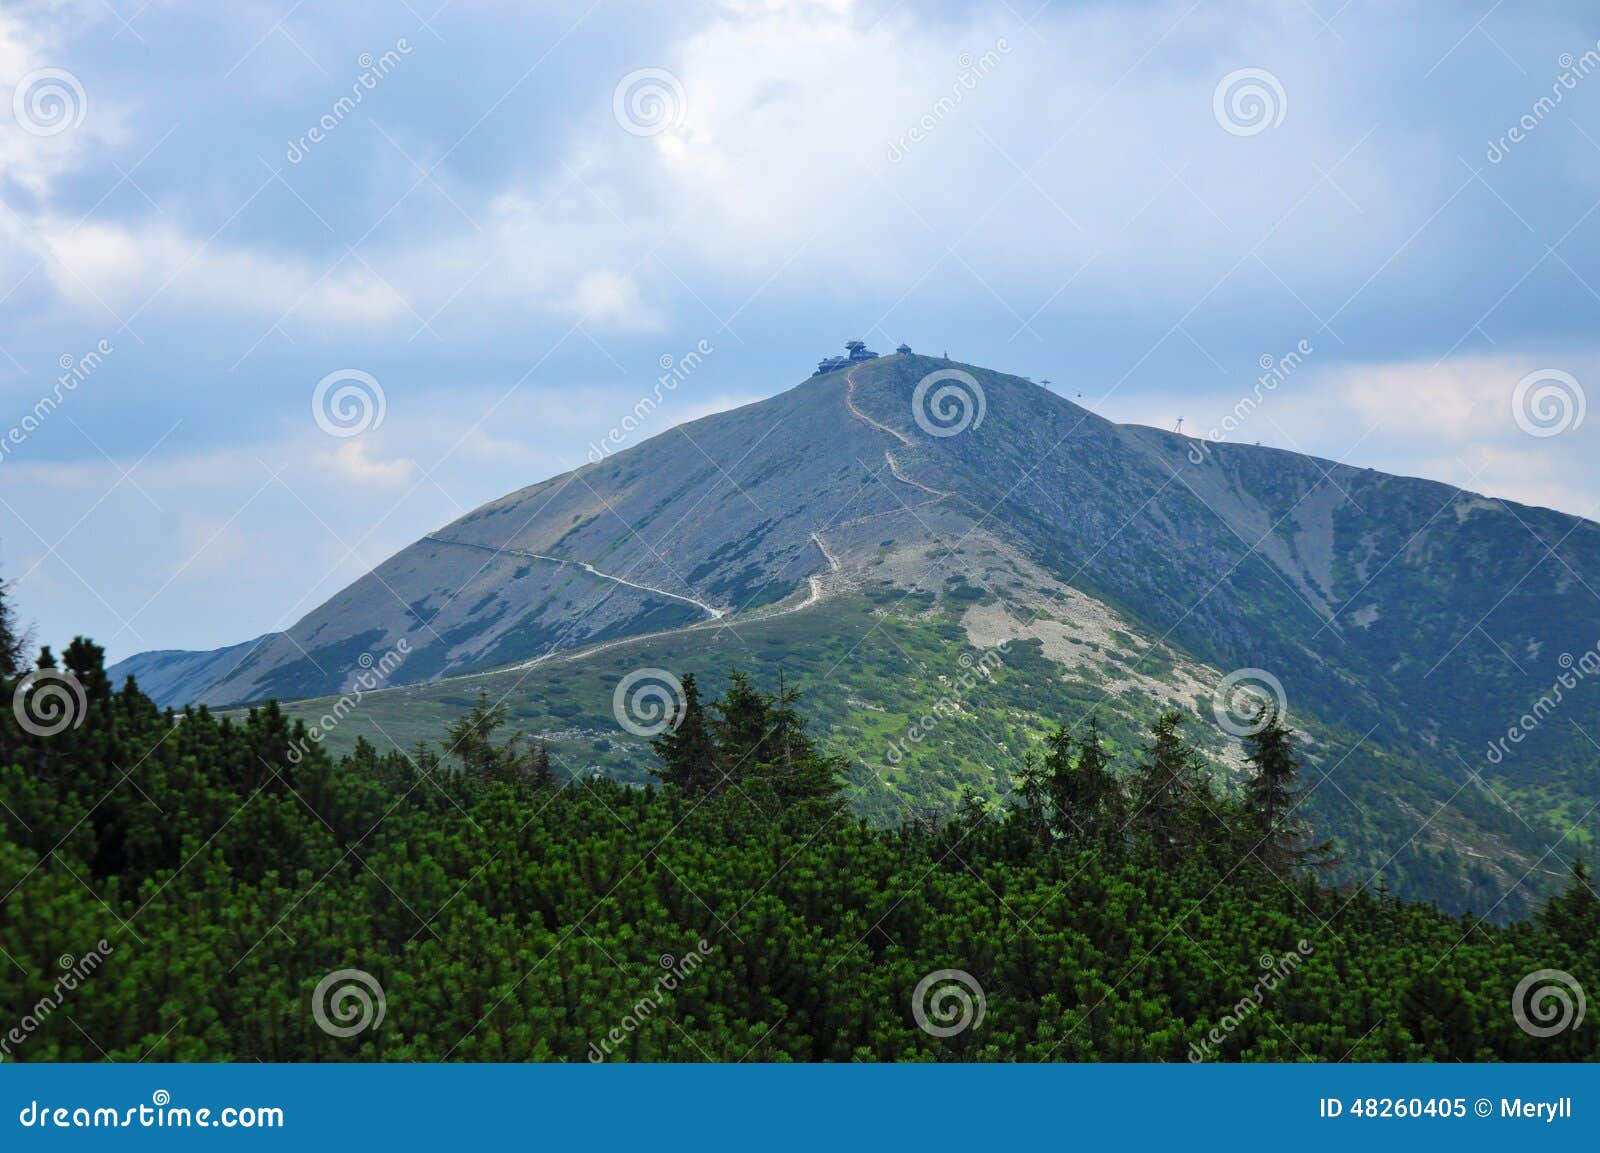 krkonose, krkonoÃÂ¡e snÃâºÃÂ¾ka mountain